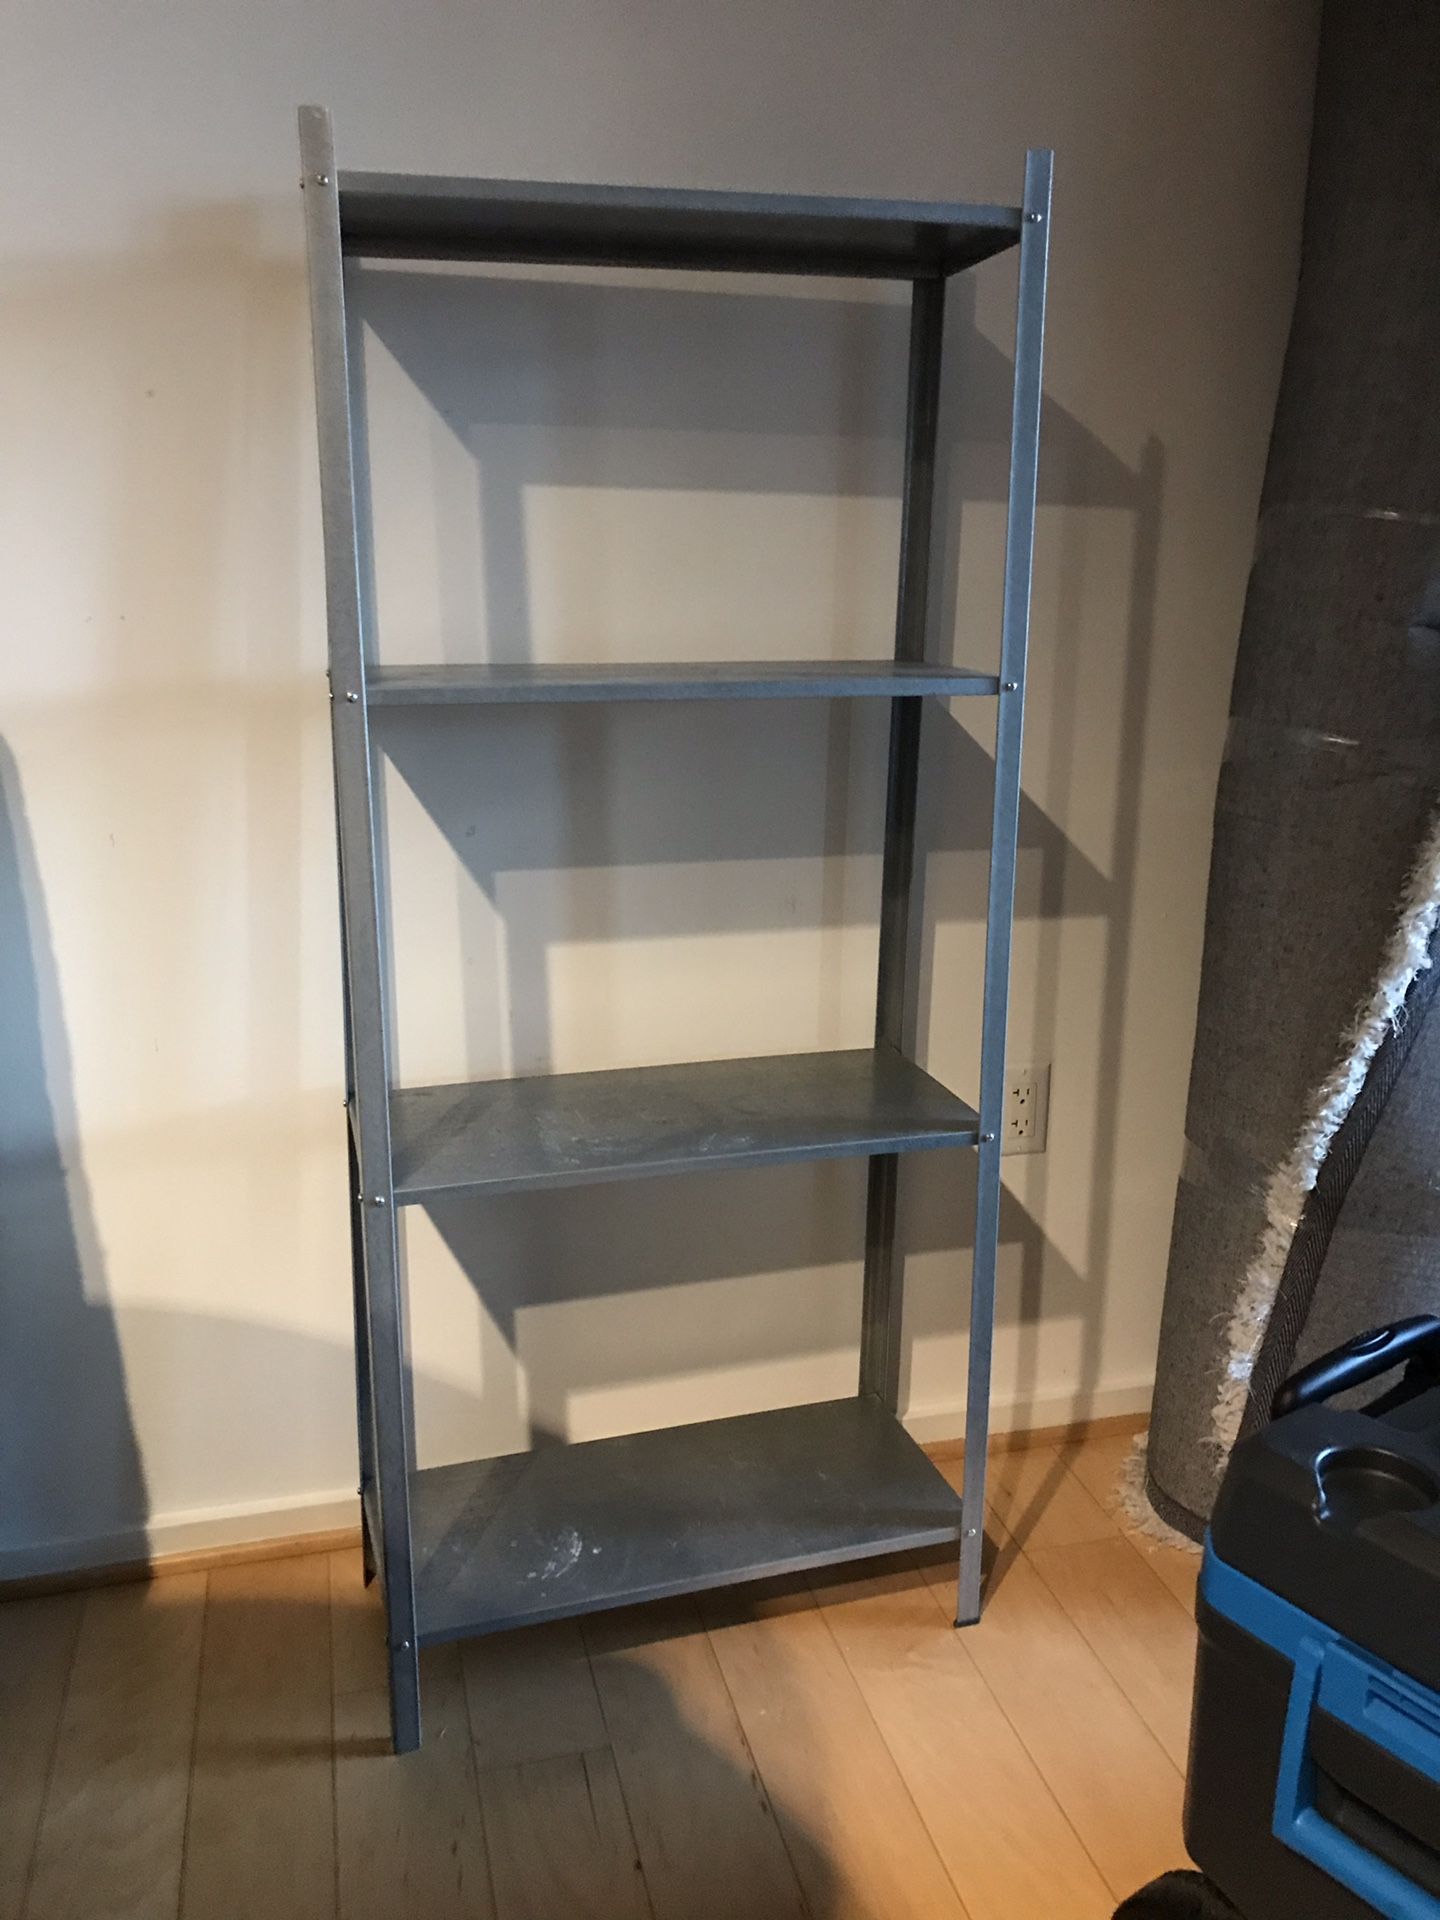 Gently used metal shelf